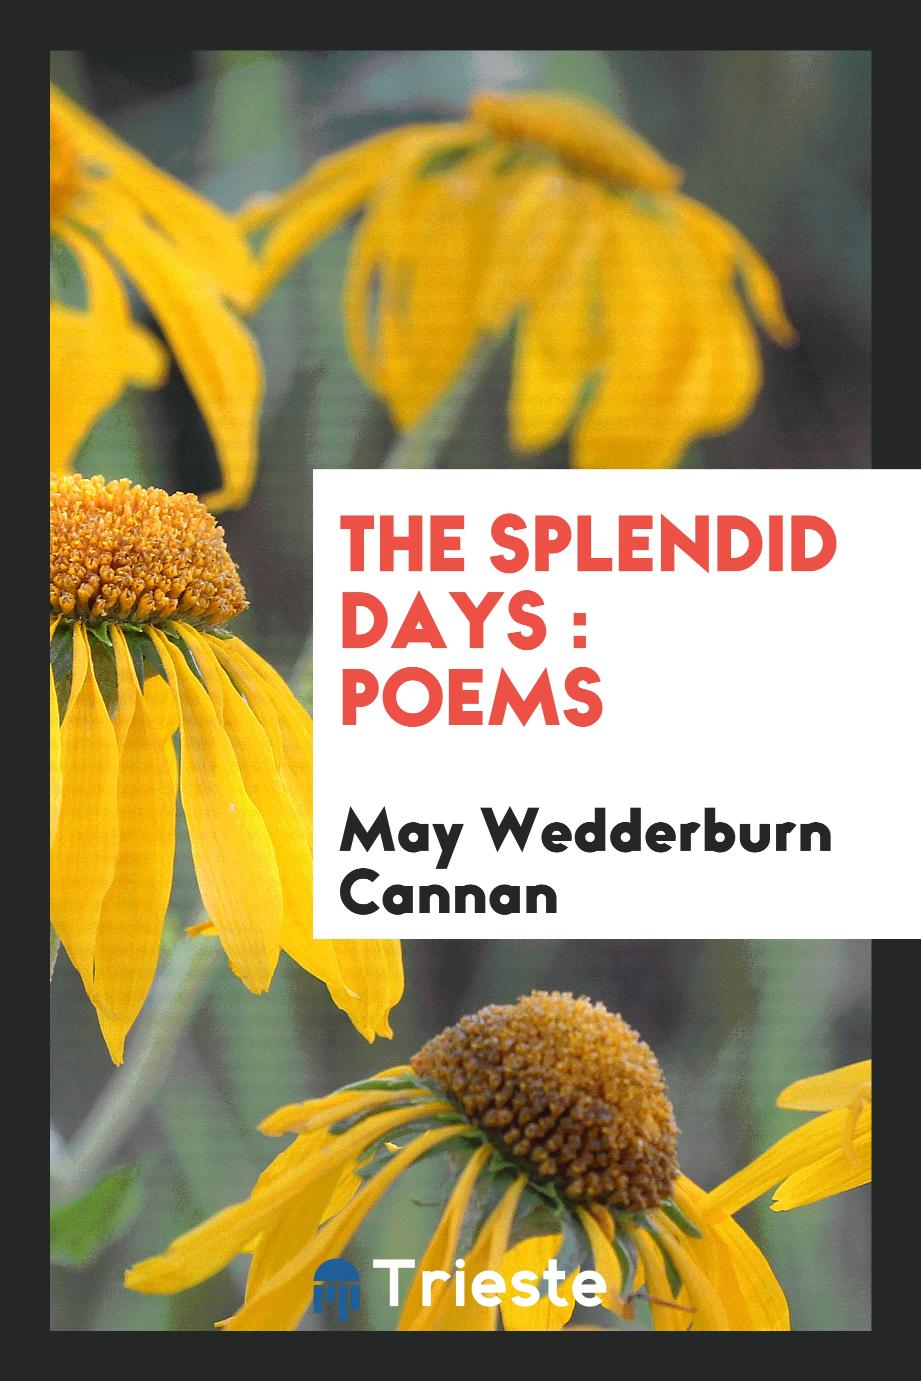 The splendid days : poems